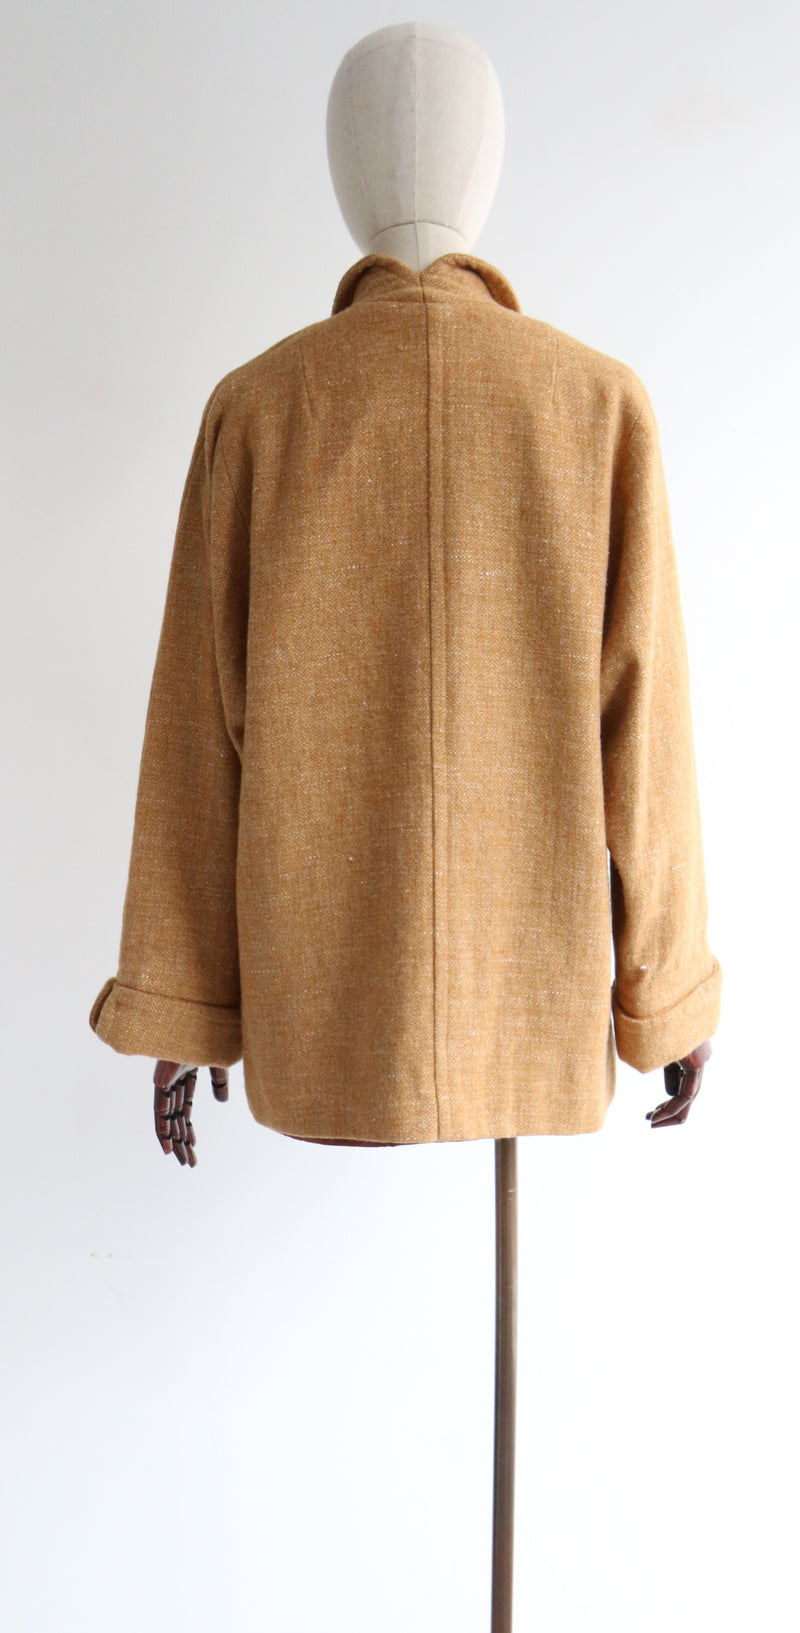 "Mustard Tweed" Vintage 1960's Mustard Wool Jacket UK 14 US 10